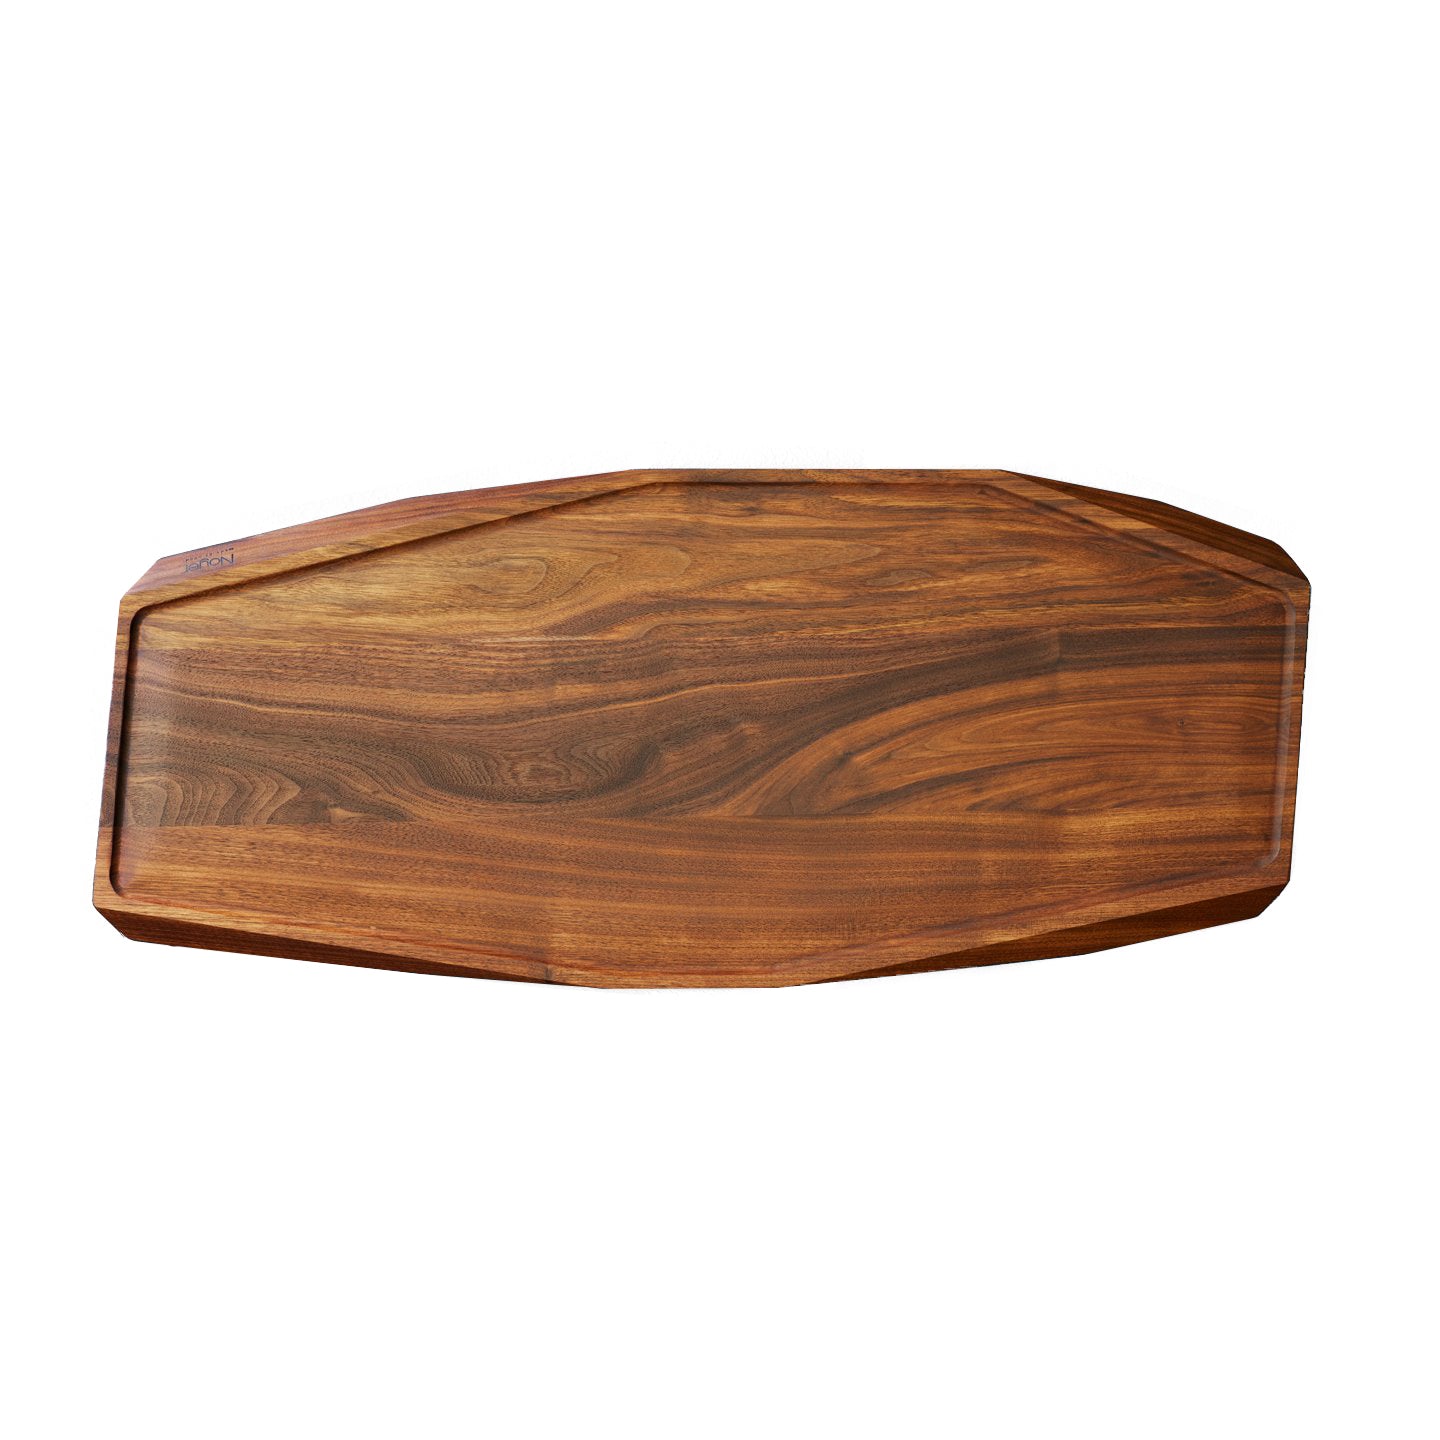 Noyer Walnut Carving Board / 78x33cm